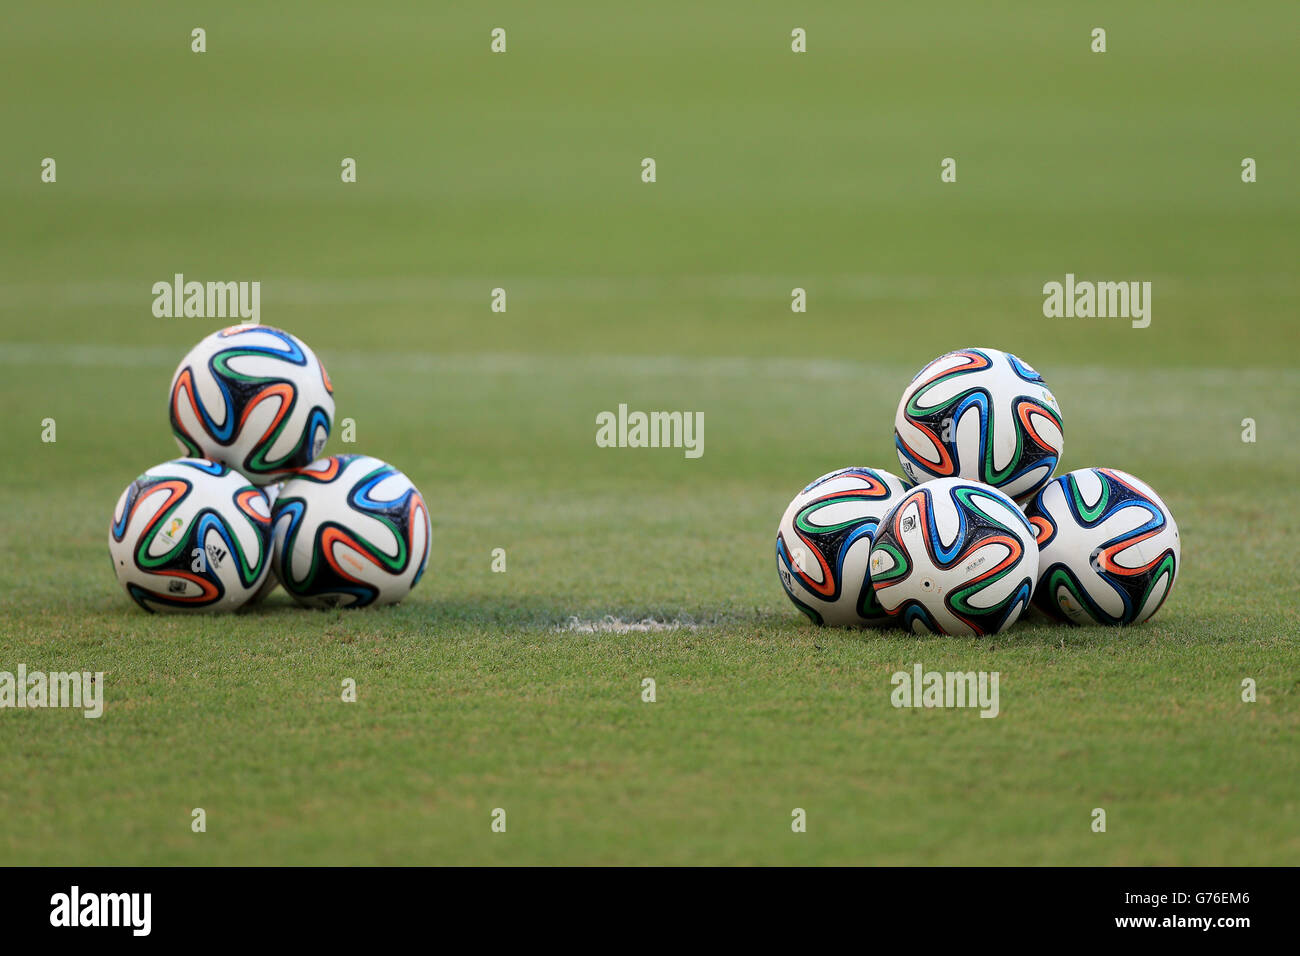 https://c8.alamy.com/comp/G76EM6/soccer-fifa-world-cup-2014-round-of-16-costa-rica-v-greece-arena-pernambuco-G76EM6.jpg